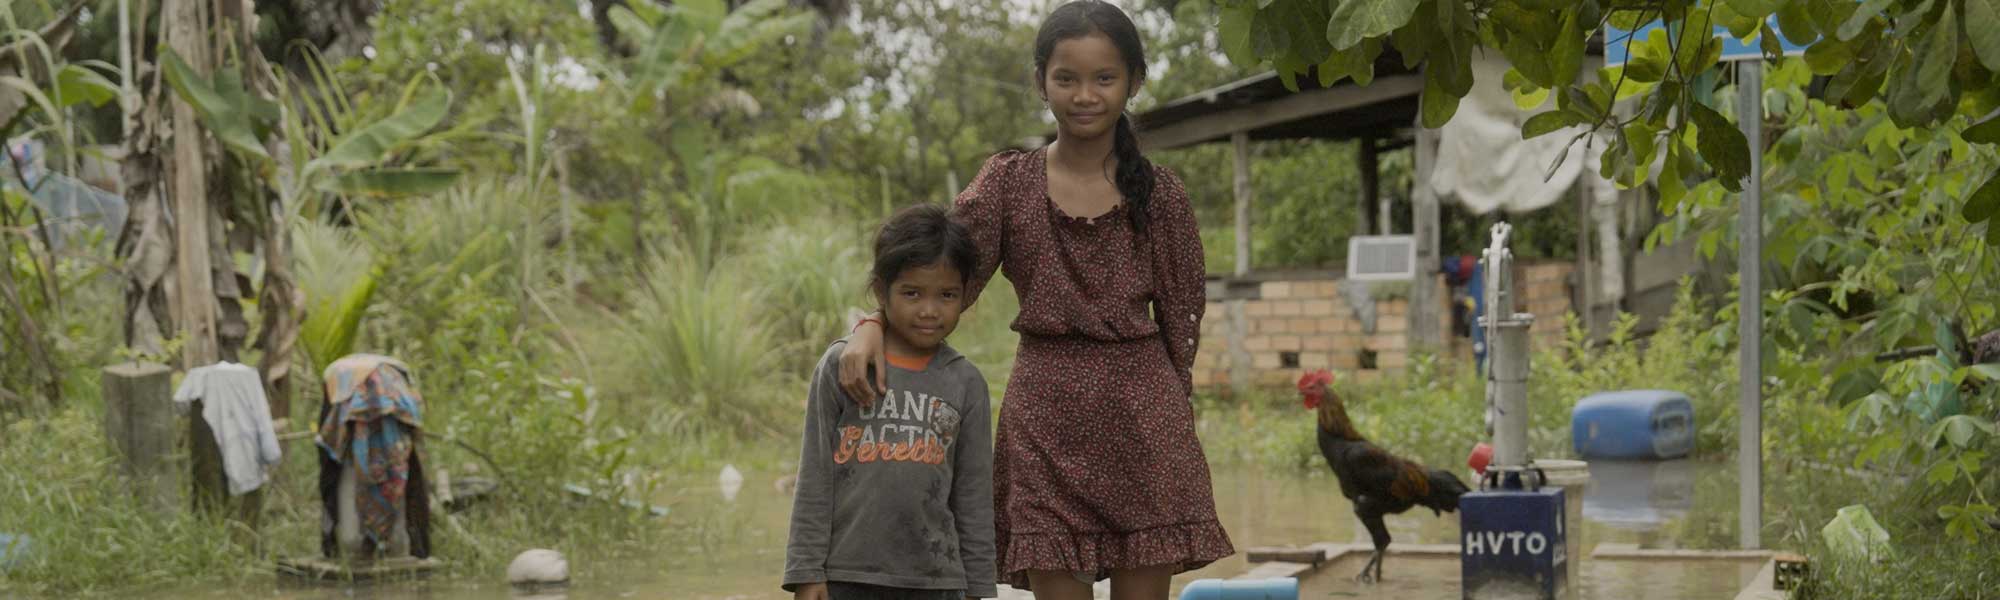 Sreinea og Sreineath fra Kambodsja.